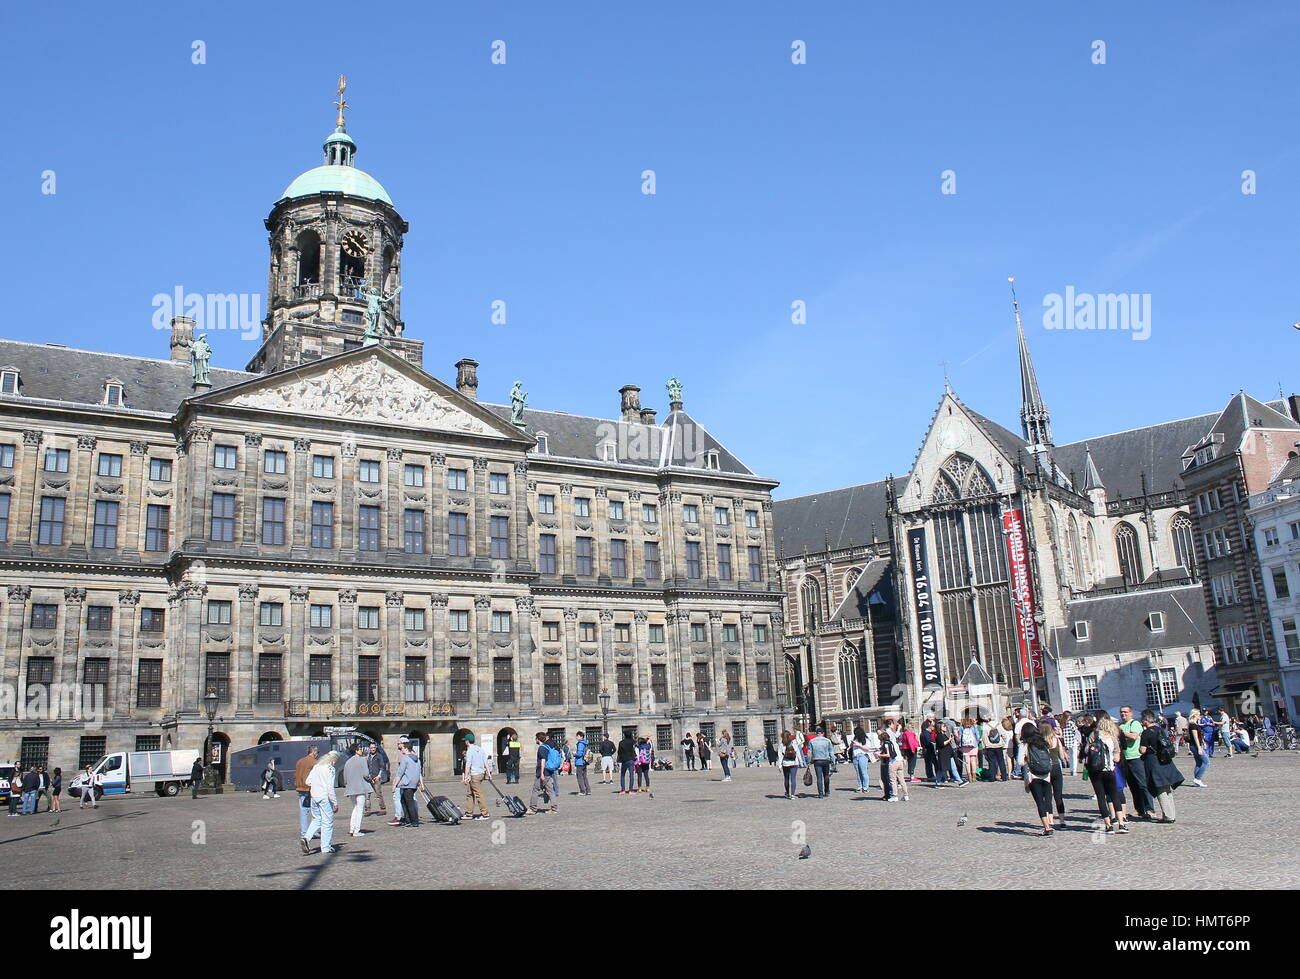 Xvii secolo Paleis op de Dam - Palazzo reale di Amsterdam sulla affollata piazza Dam. Sulla destra Nieuwe Kerk chiesa, centro di Amsterdam, Paesi Bassi. Foto Stock